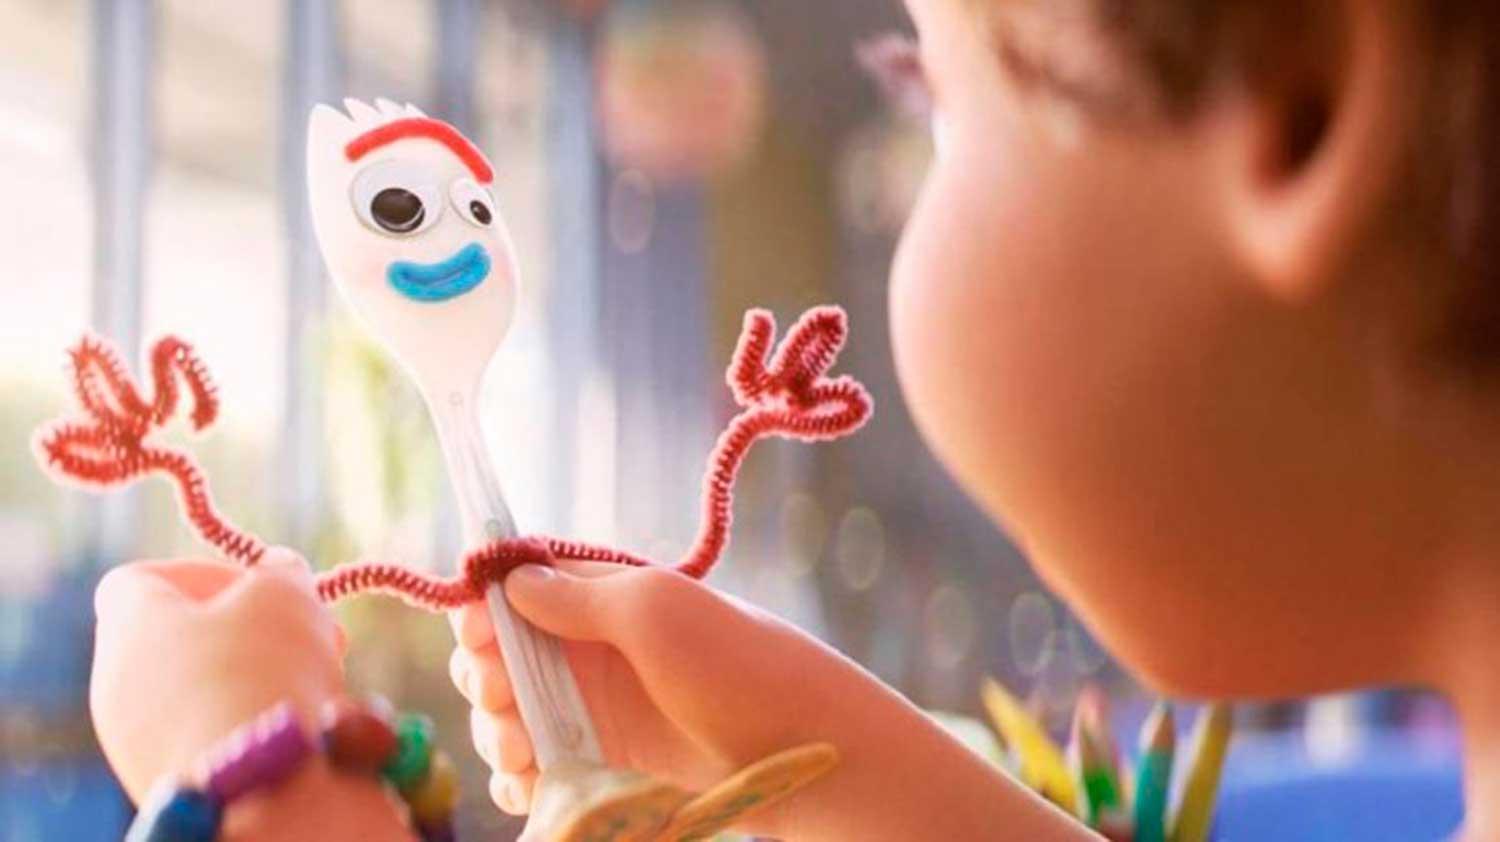 El muñeco Forky, el personaje más querido de Toy Story 4, será retirado de las jugueterías